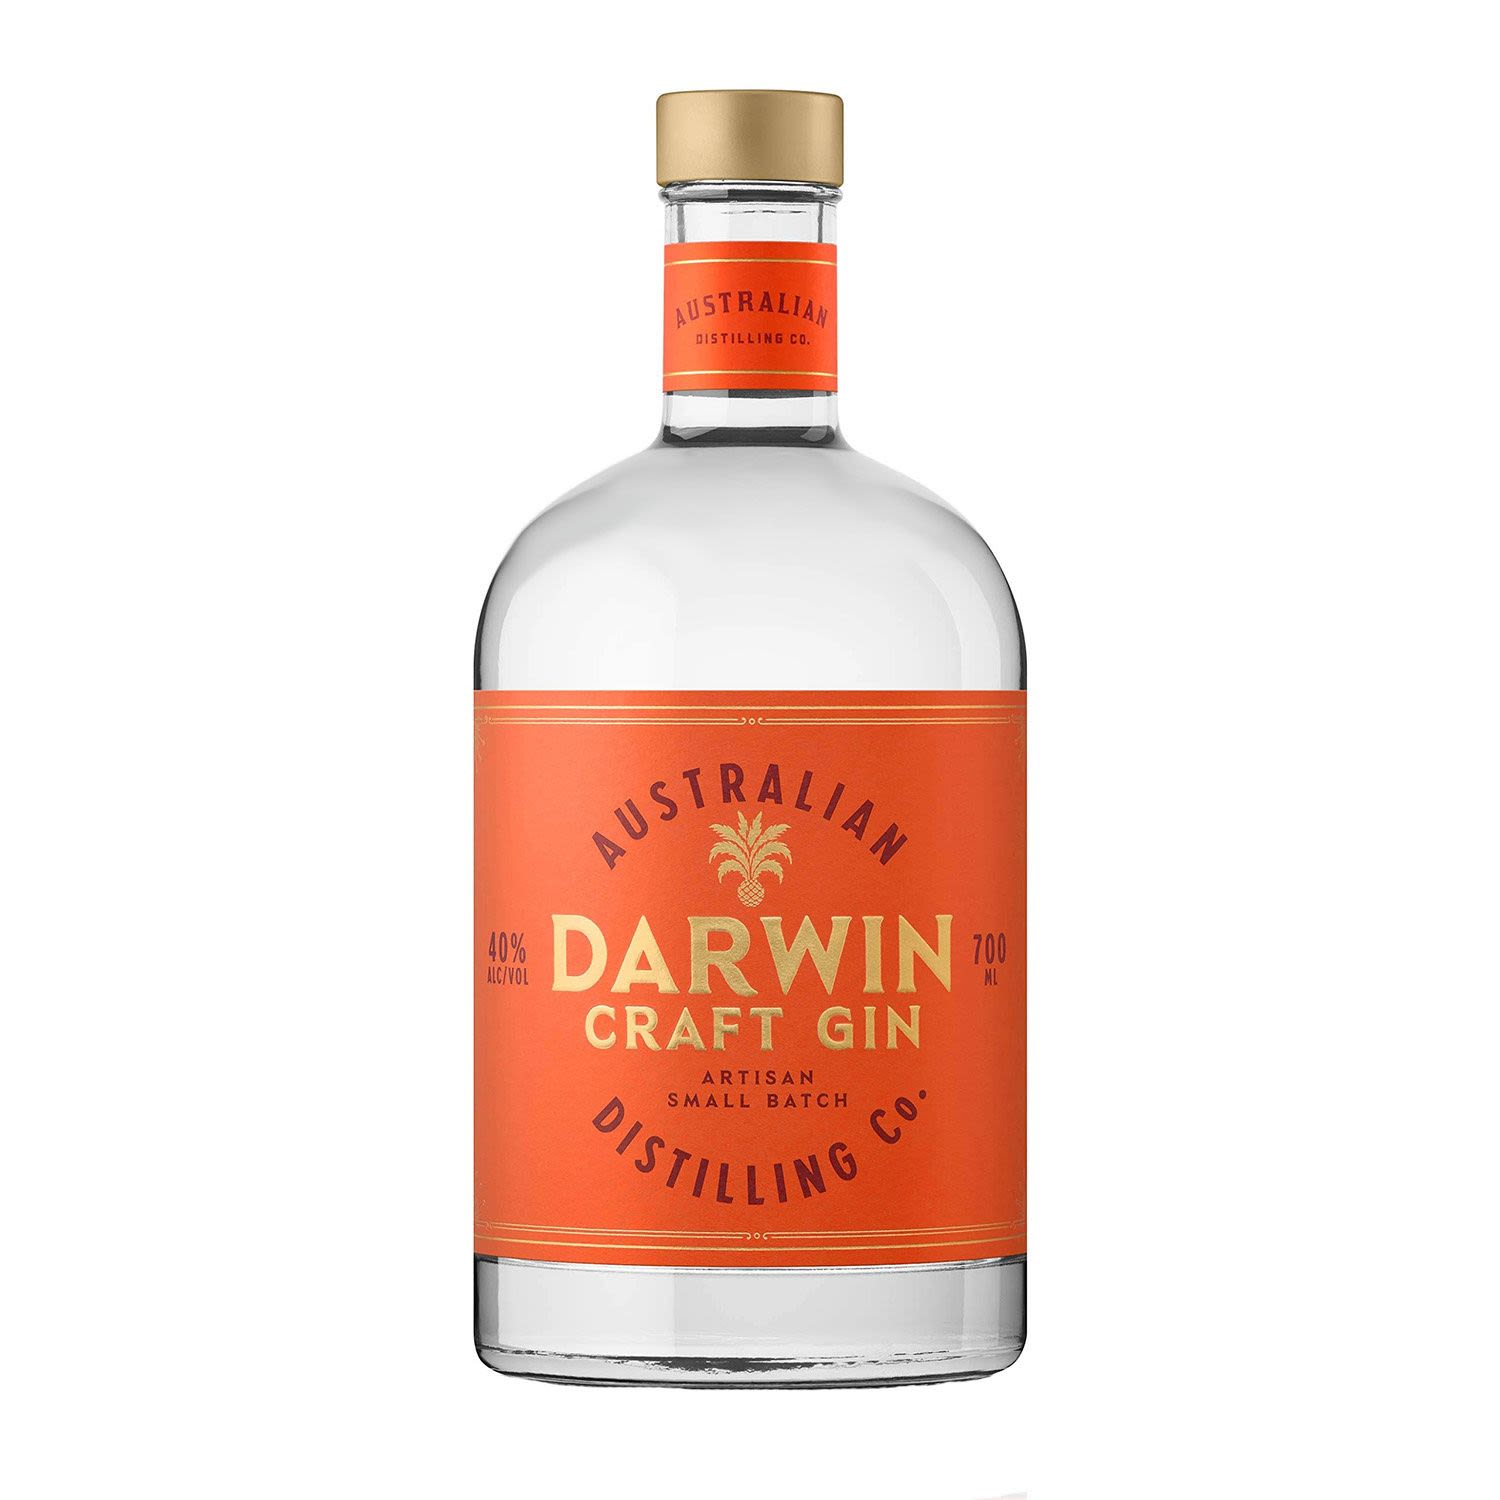 Darwin Craft Gin 700mL Bottle